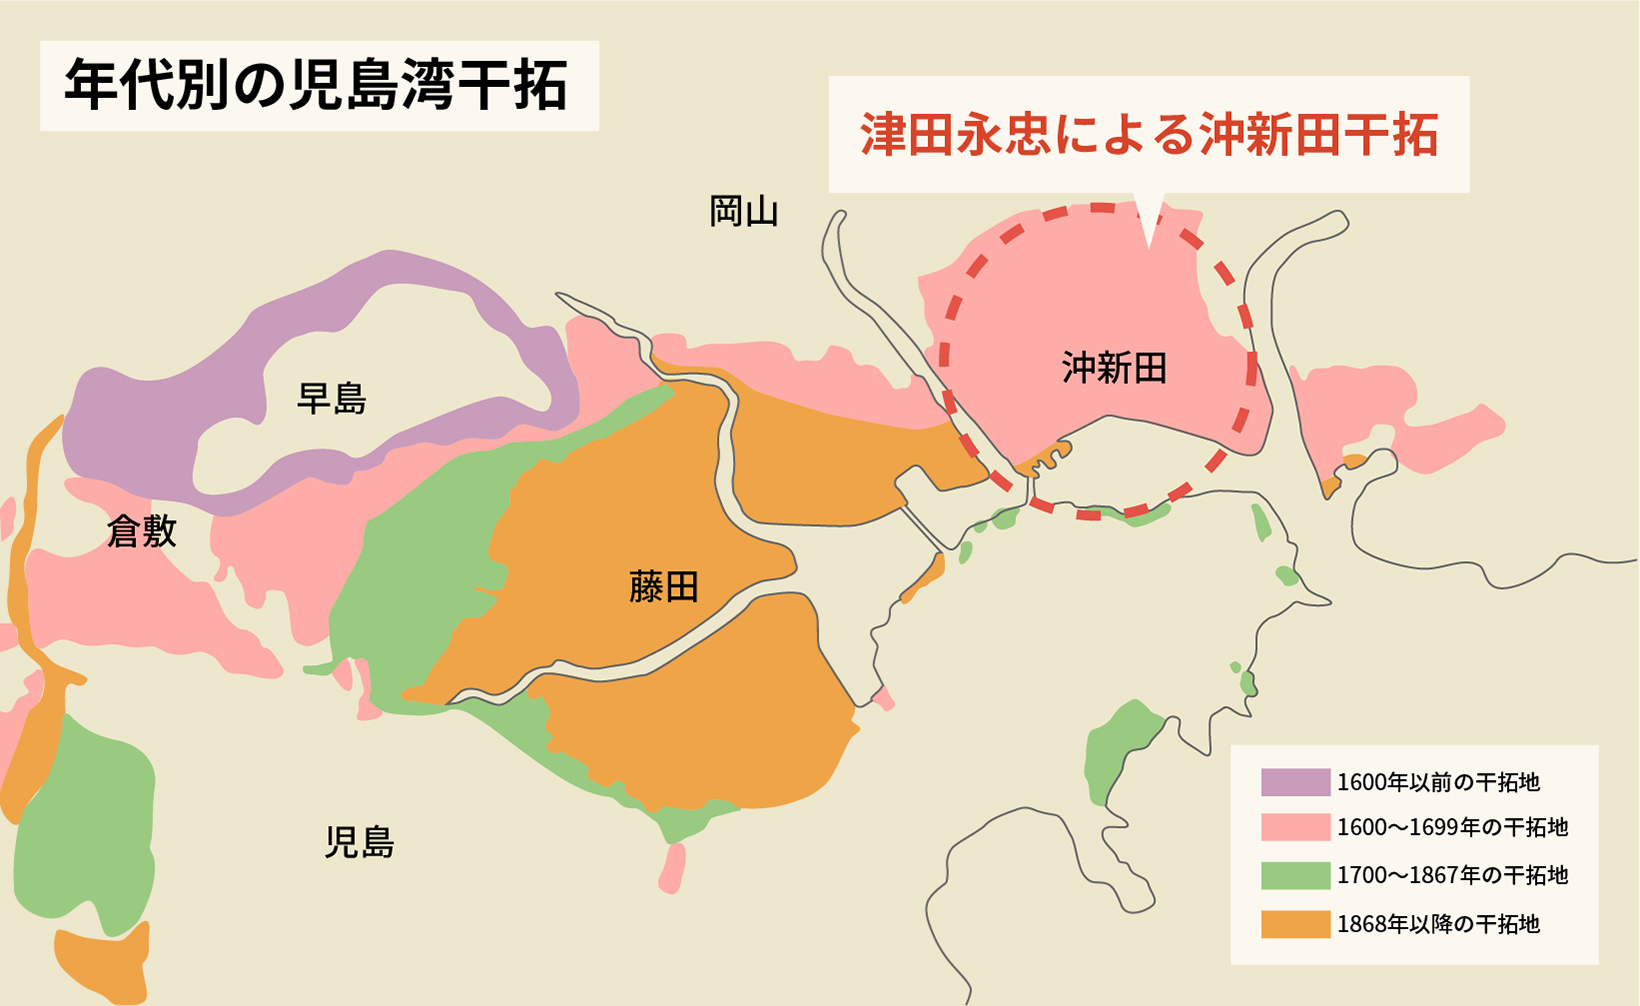 津田永忠の干拓領域の図